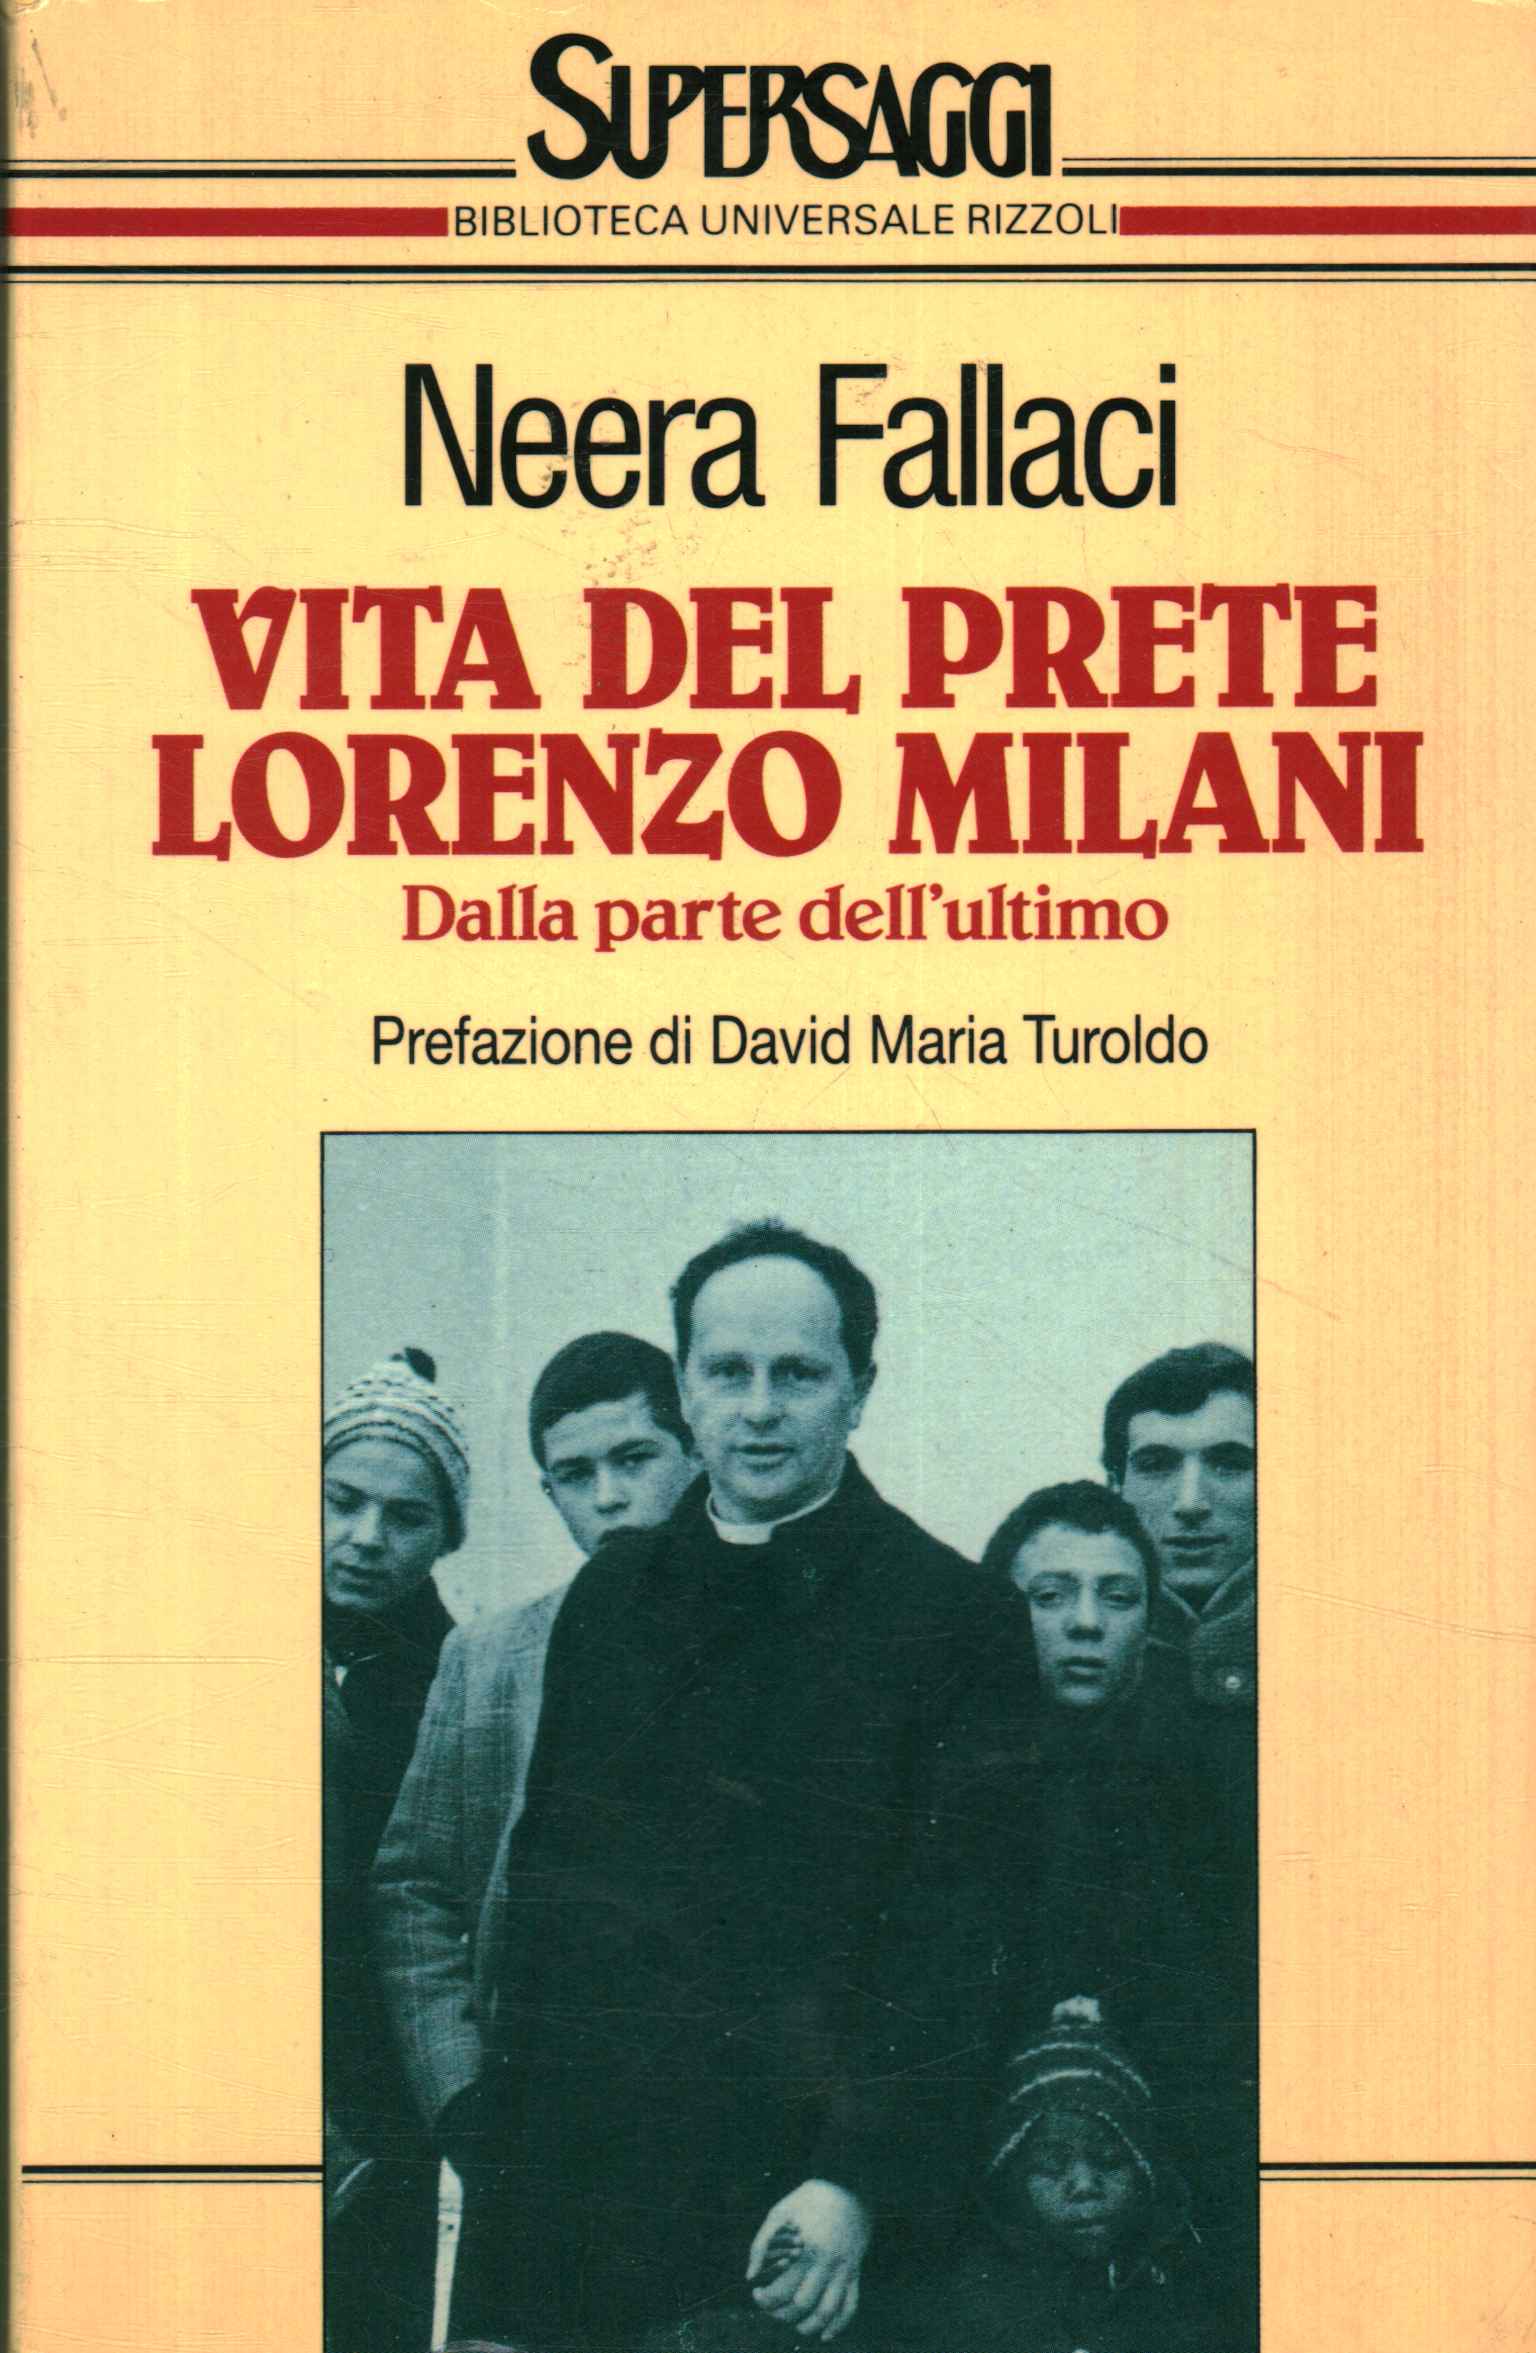 Vida del sacerdote Lorenzo Milani. de p